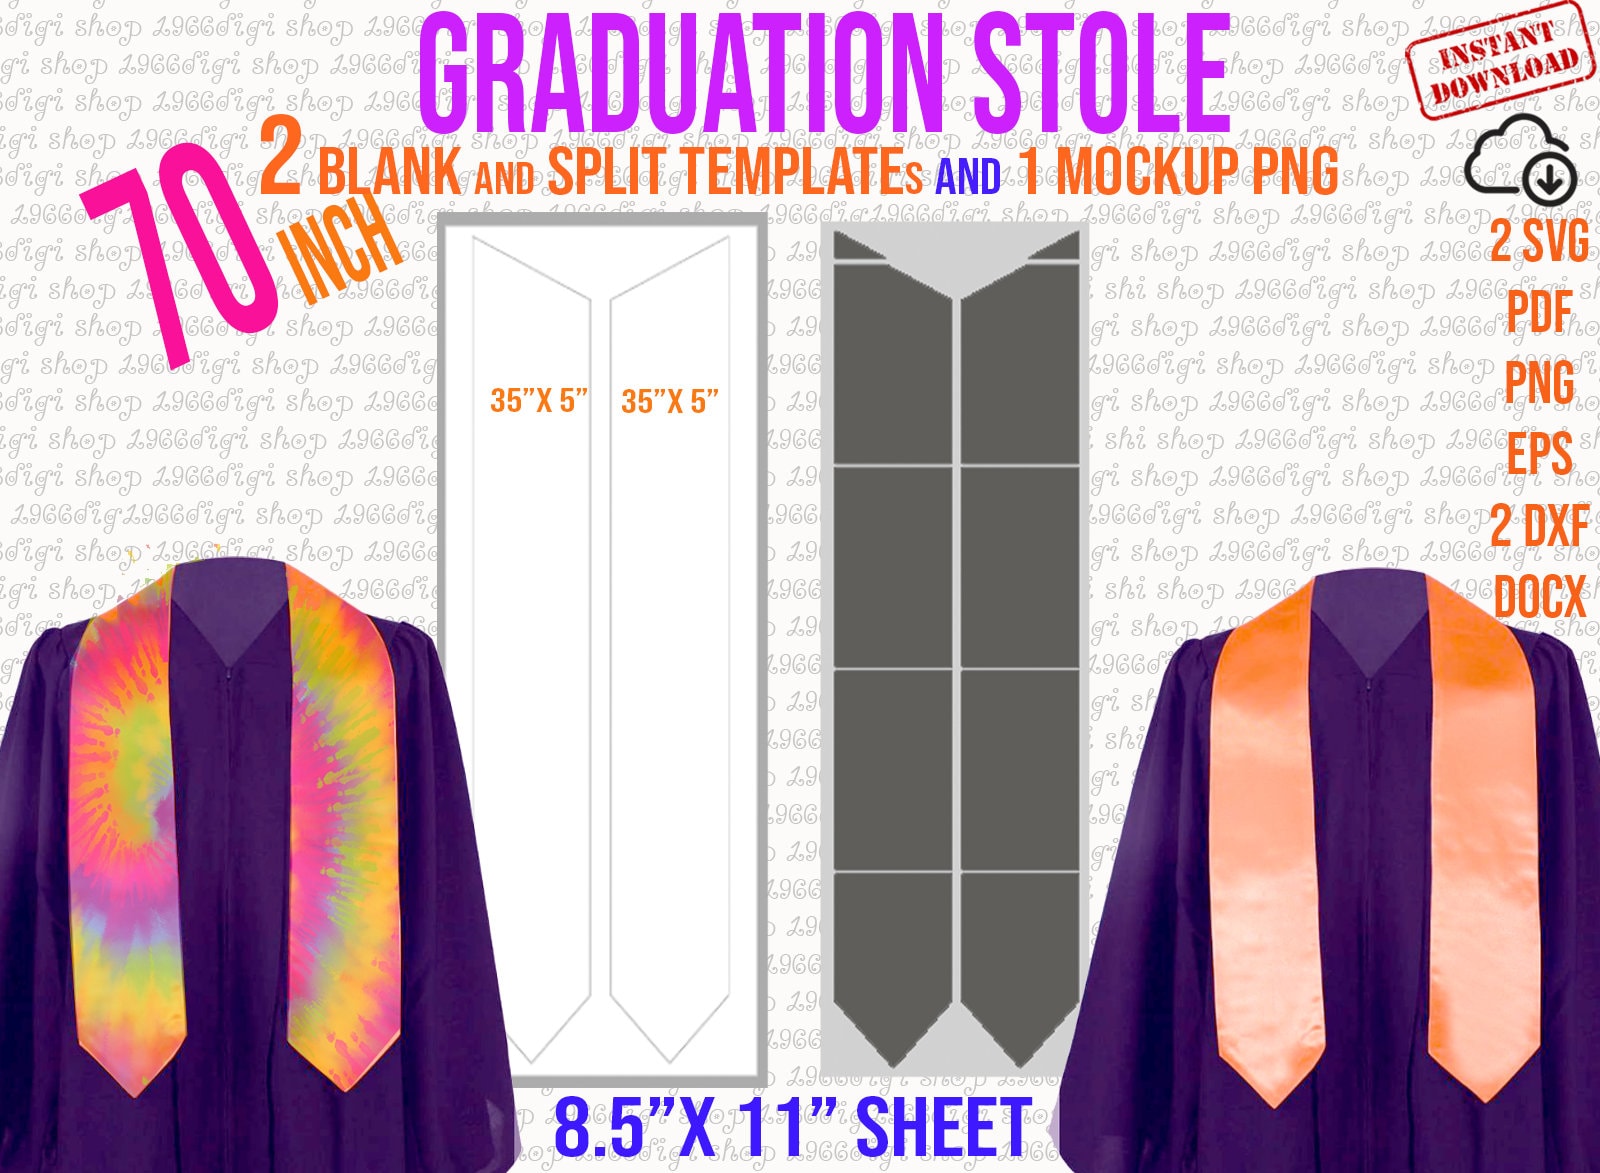 stole-template-stole-graduation-custom-70-graduation-stole-template